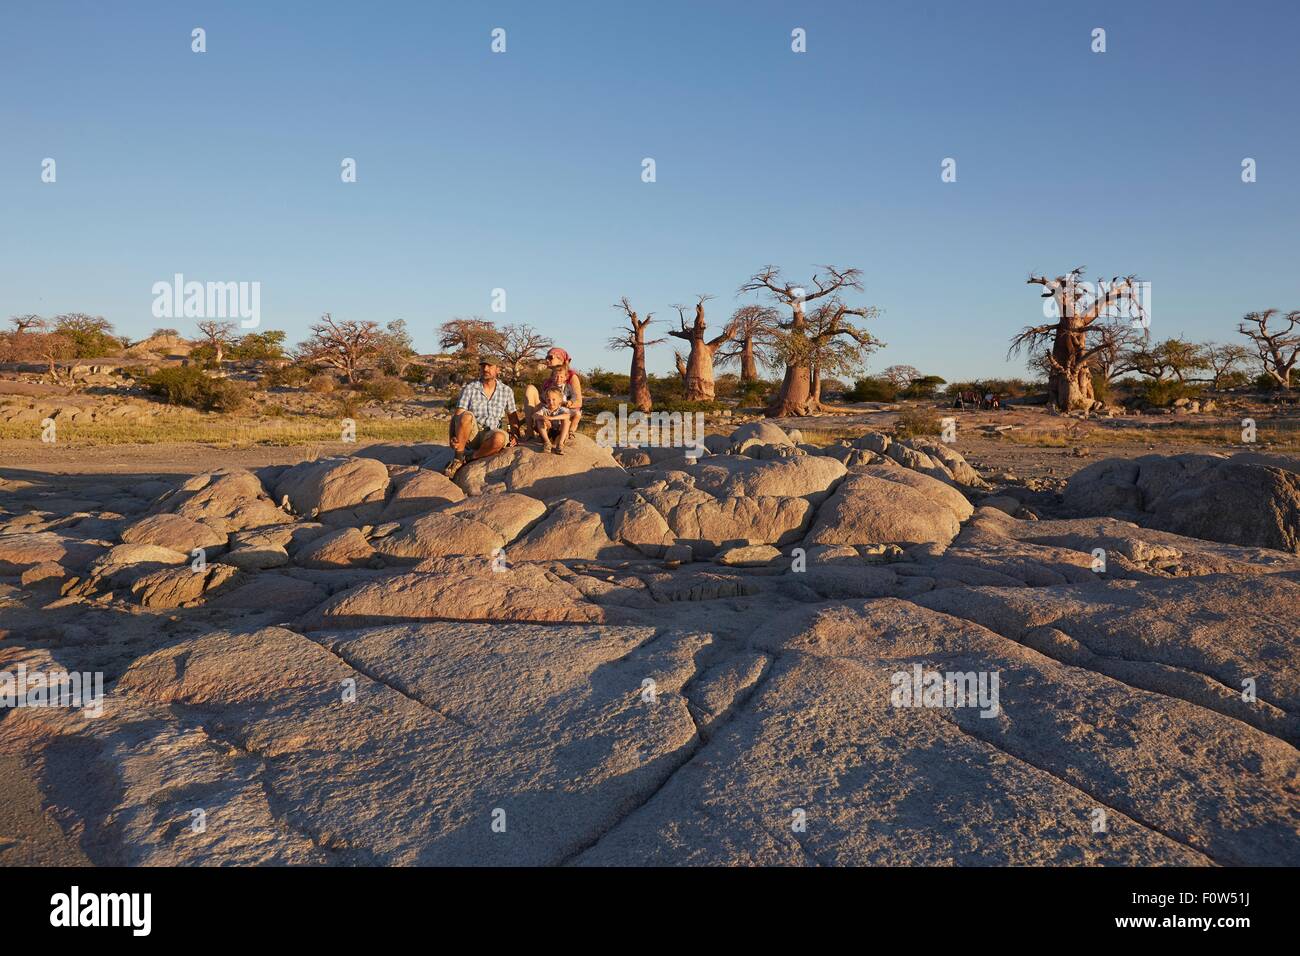 Family sitting on rocks, looking at view, Gweta, makgadikgadi, Botswana Stock Photo